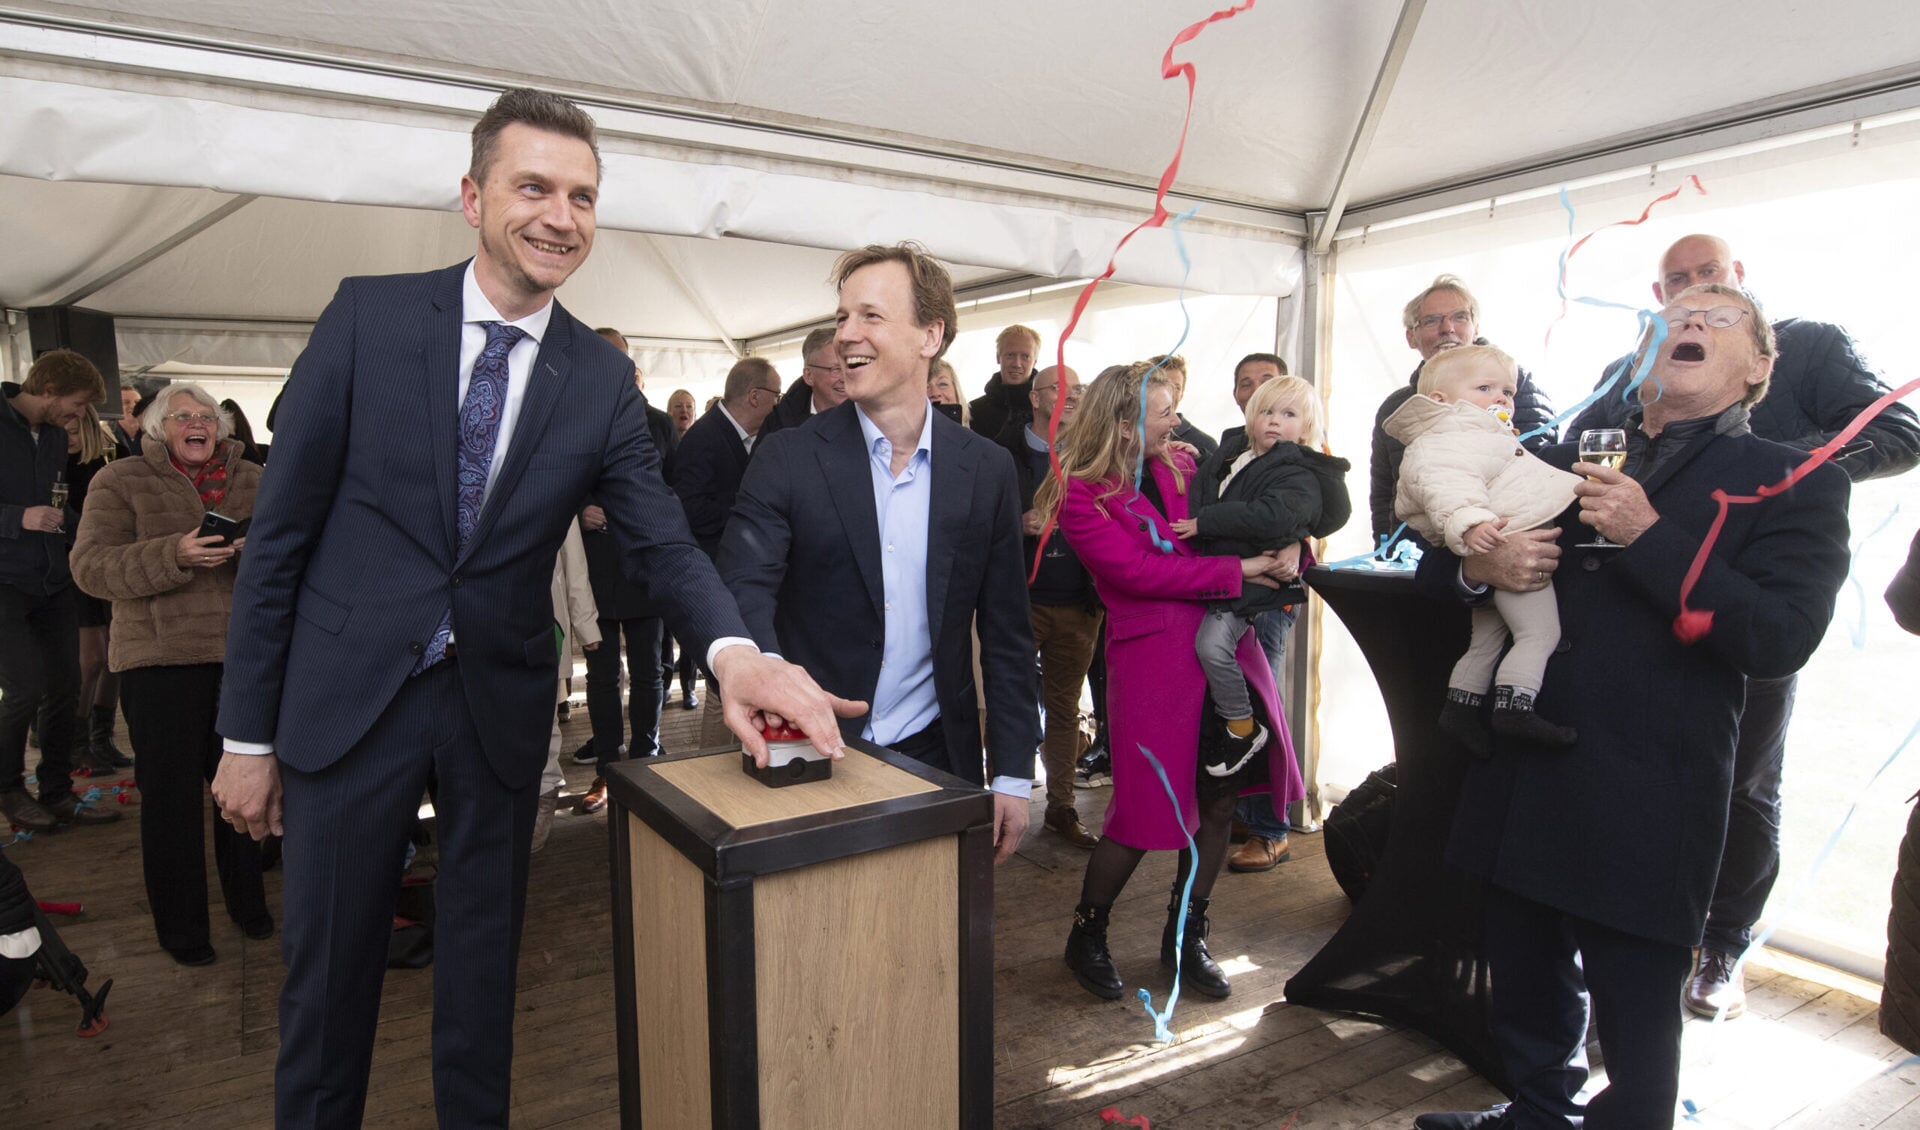  Epke Zonderland opent in 2022 het gloednieuwe Dutch Gymnastics Nationaal trainingscentrum in Heerenveen